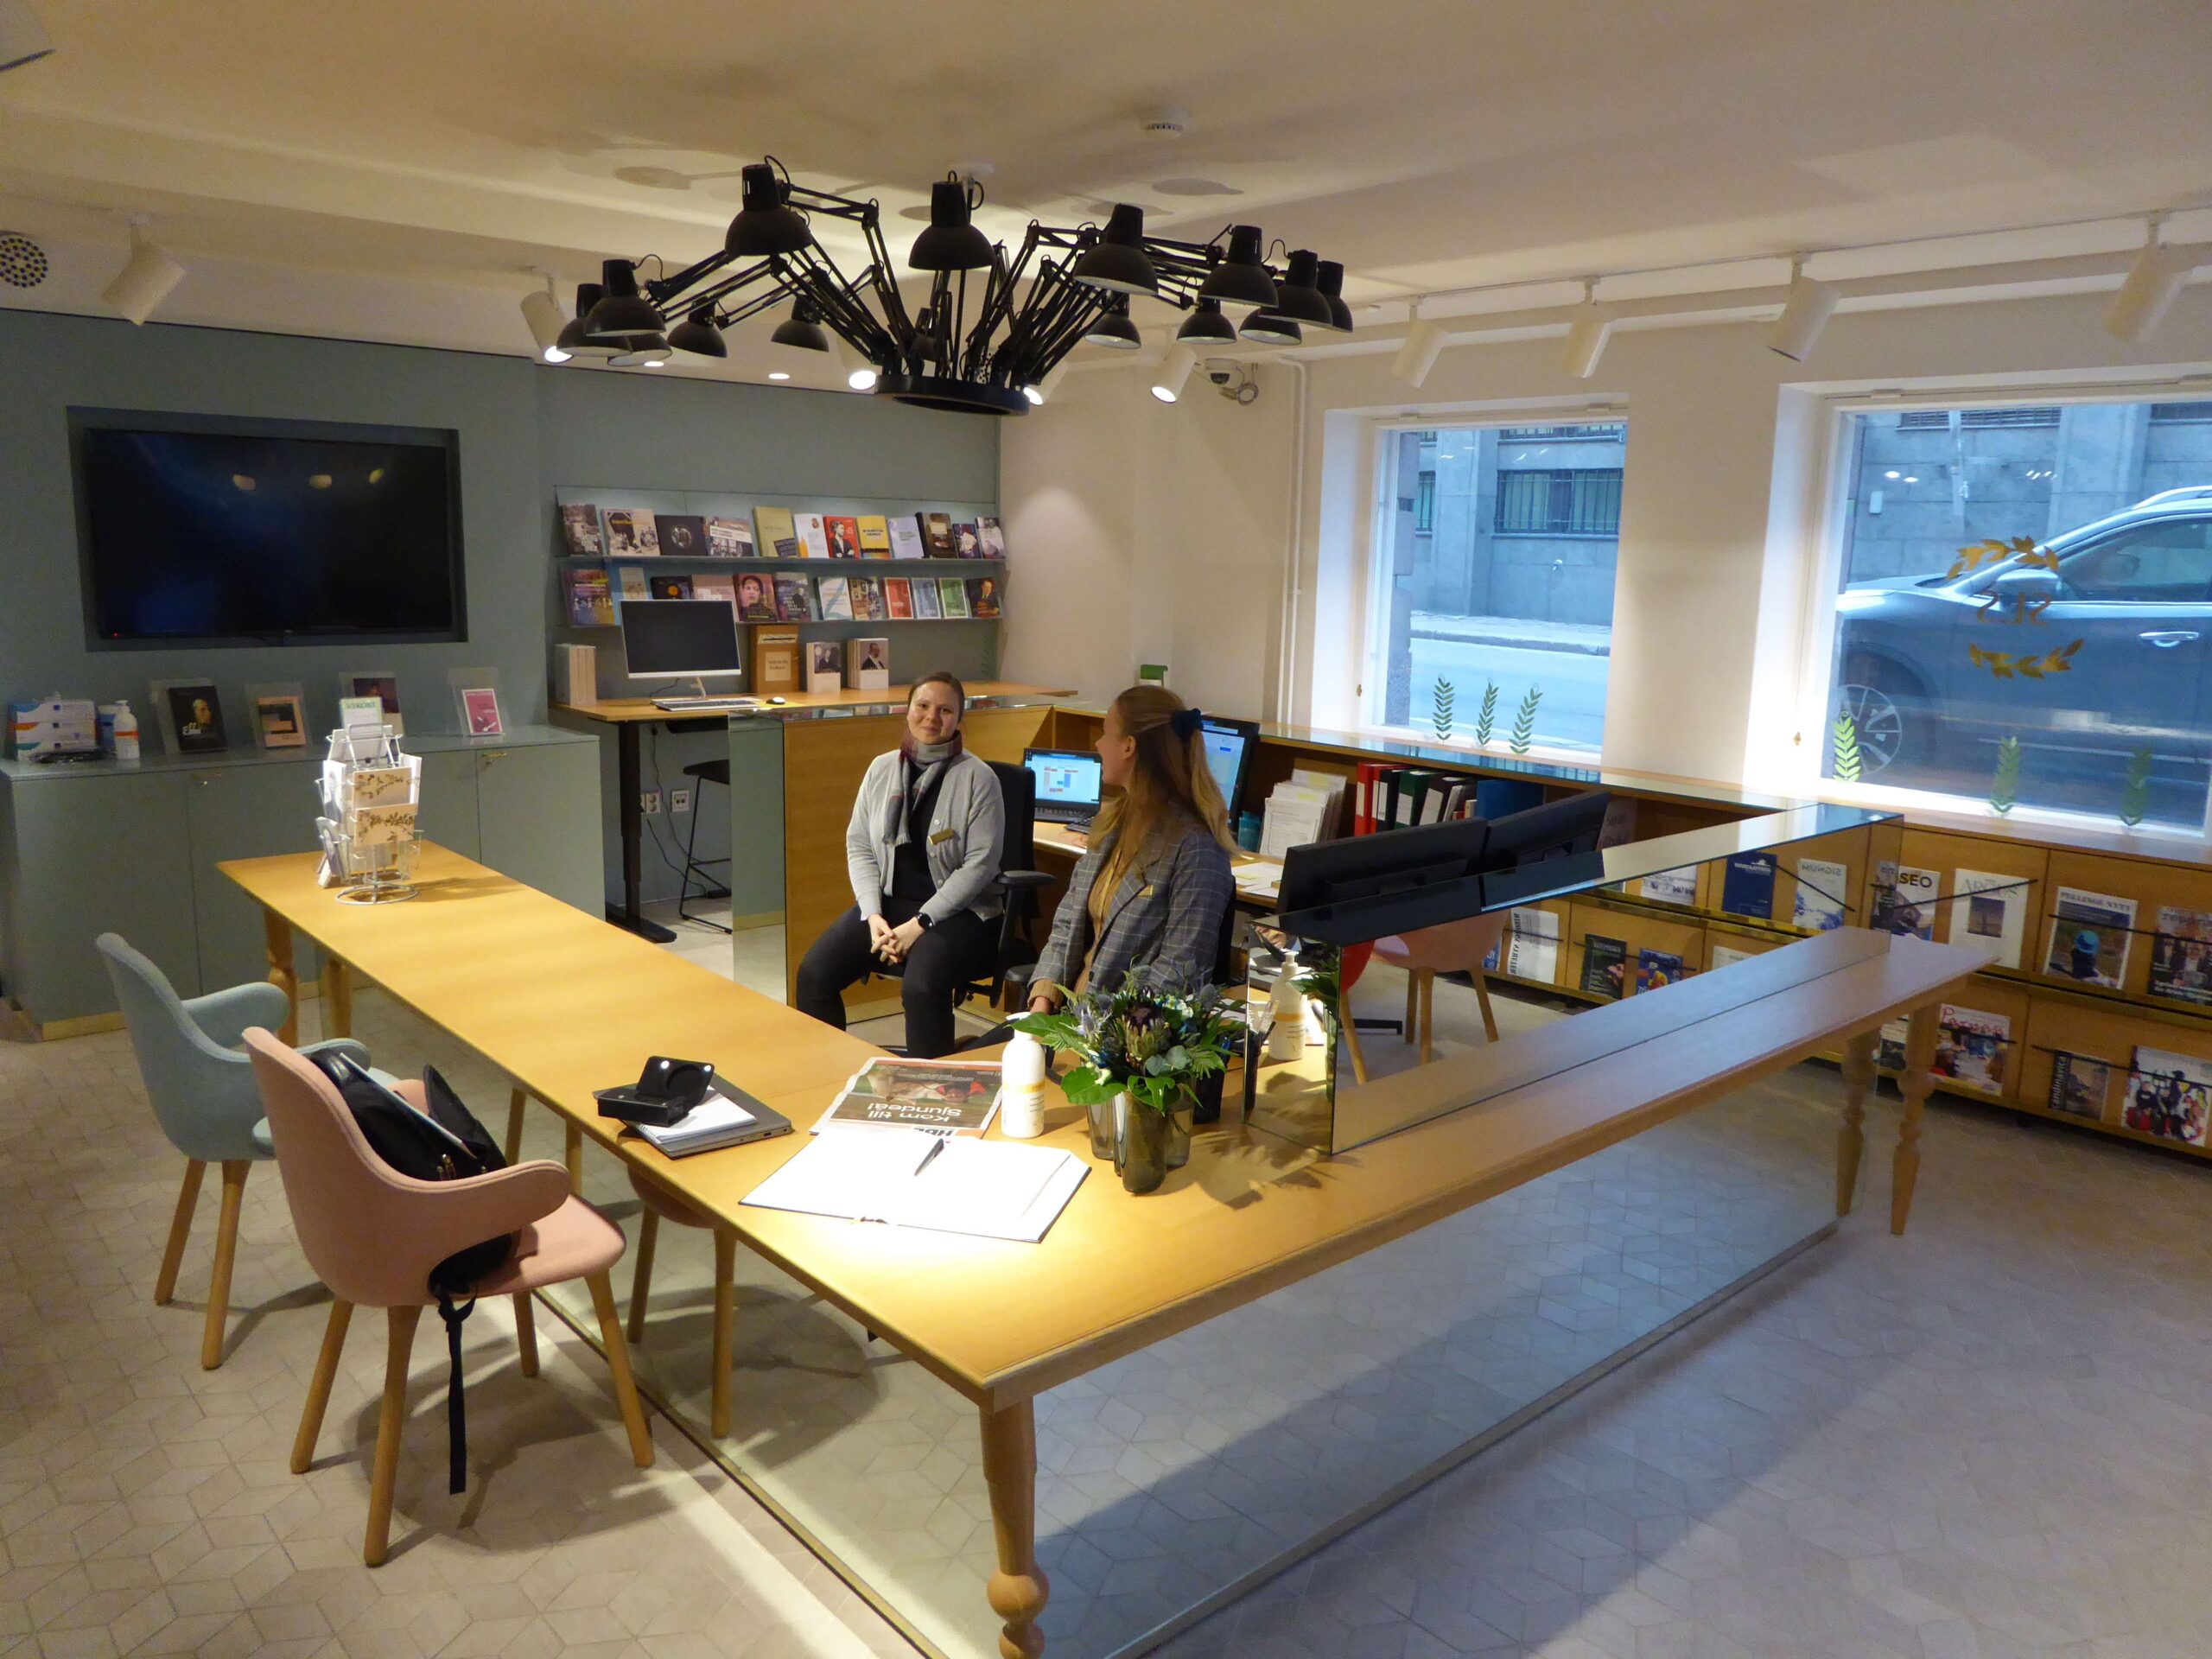 I receptionen för Svenska Litteratursällskapet satt trevliga Nadine och Mirva som visade mig min forskarplats och bjöd på kaffe. Foto ©Magnus Swahn